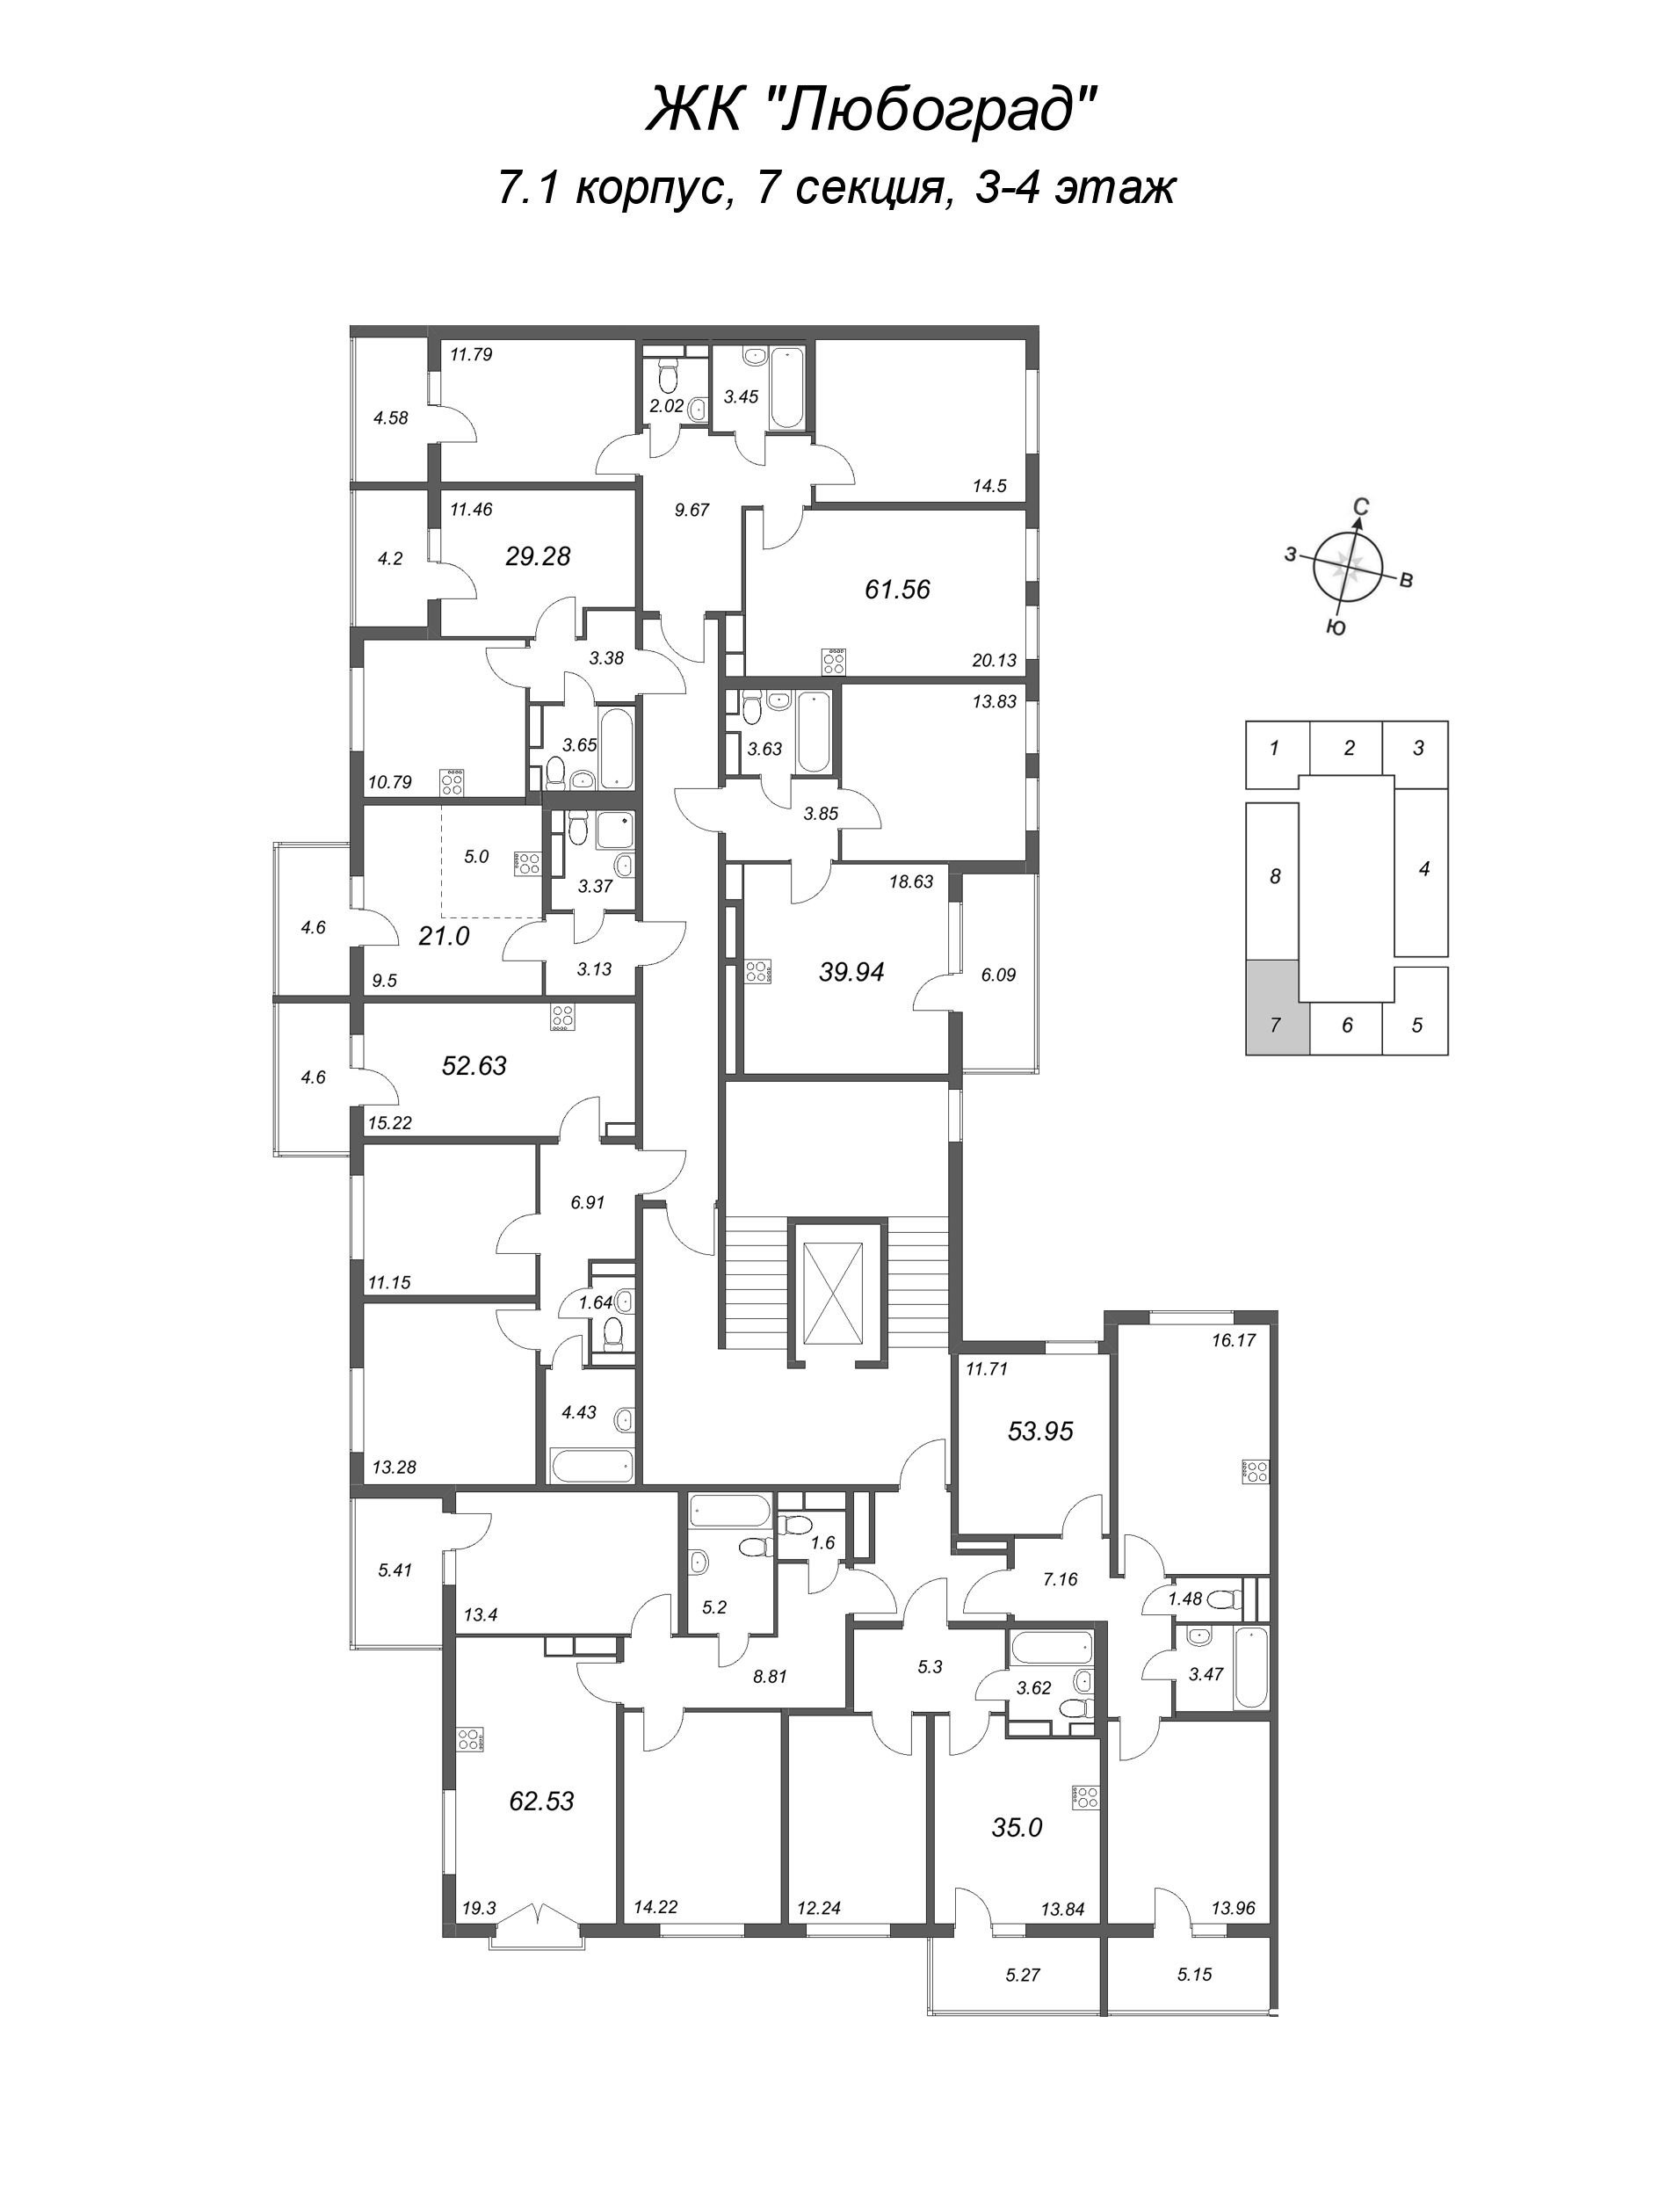 3-комнатная (Евро) квартира, 53.95 м² в ЖК "Любоград" - планировка этажа